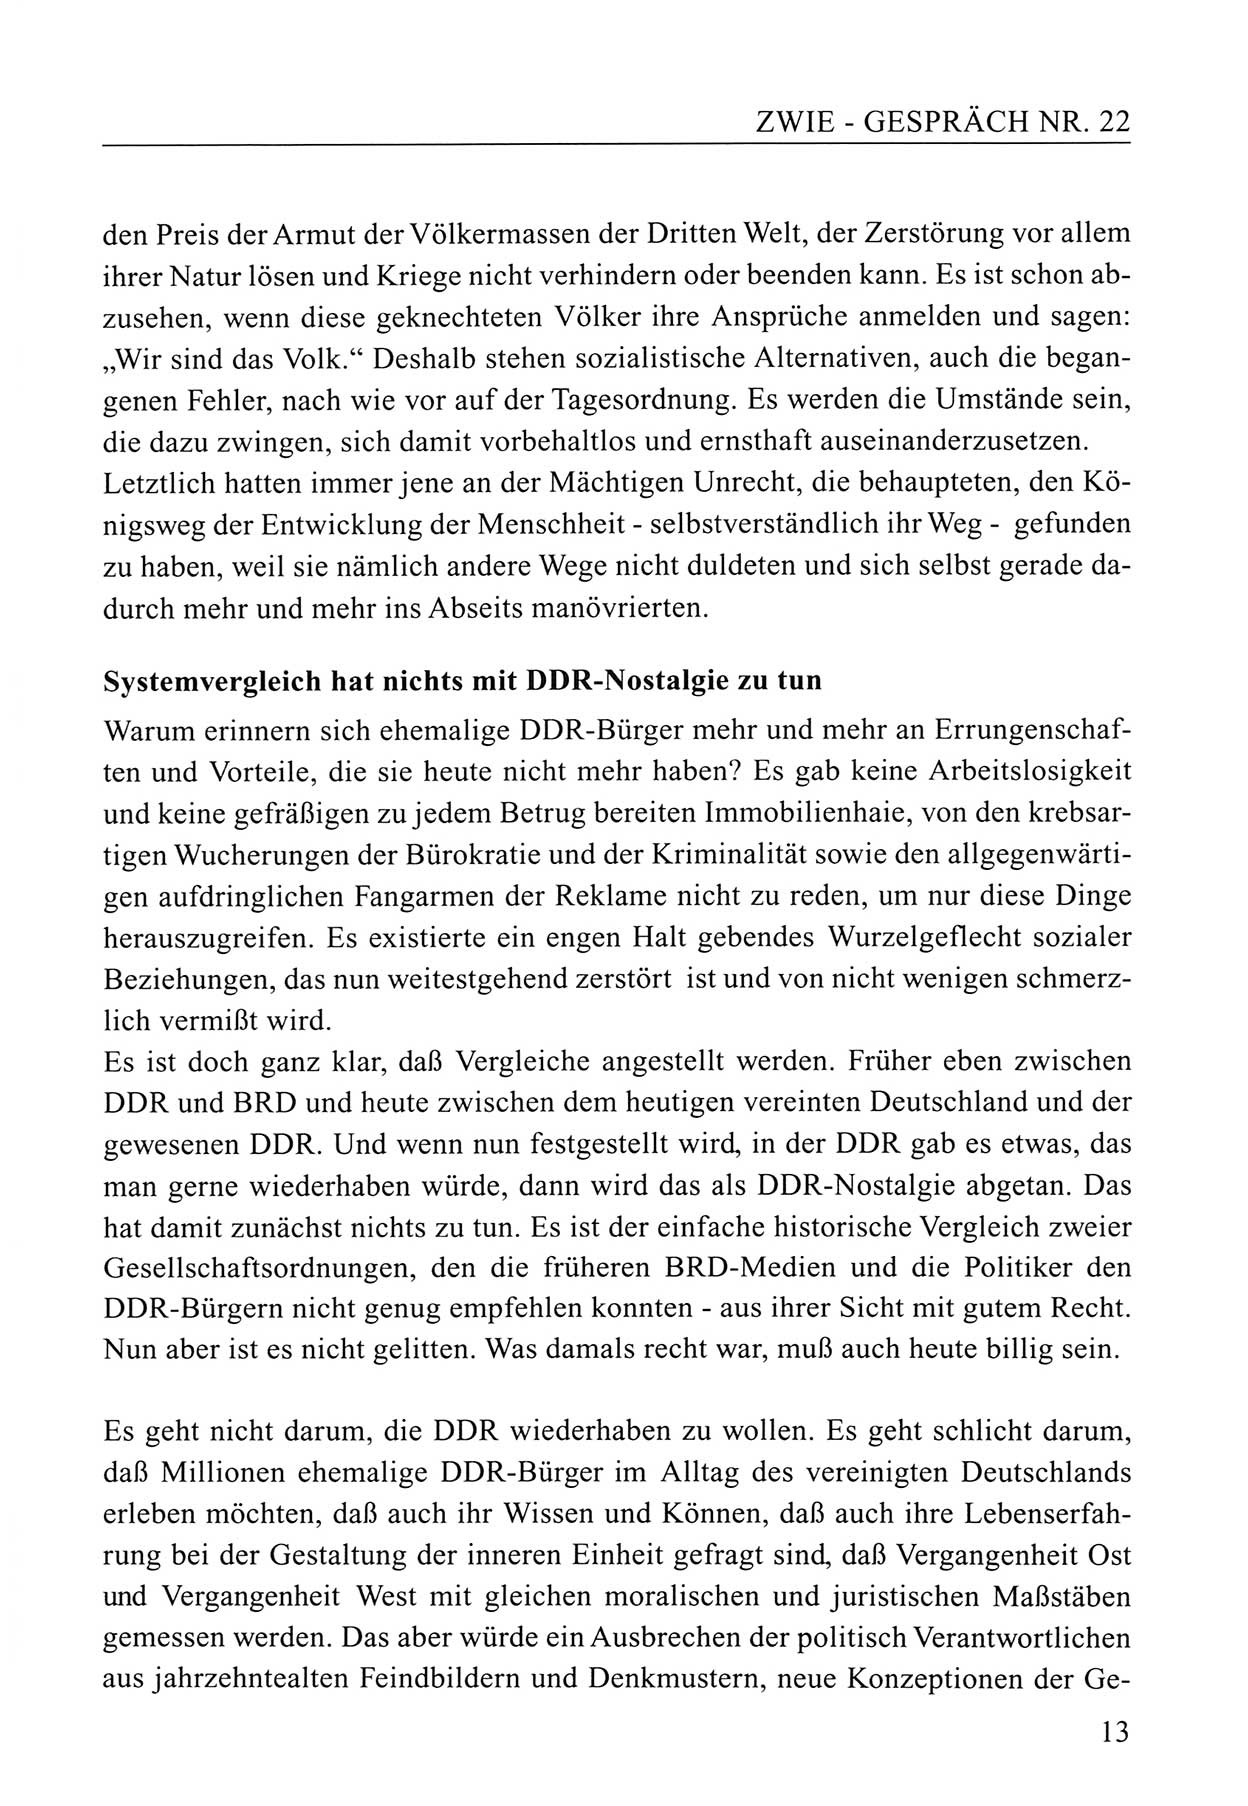 Zwie-Gespräch, Beiträge zum Umgang mit der Staatssicherheits-Vergangenheit [Deutsche Demokratische Republik (DDR)], Ausgabe Nr. 22, Berlin 1994, Seite 13 (Zwie-Gespr. Ausg. 22 1994, S. 13)